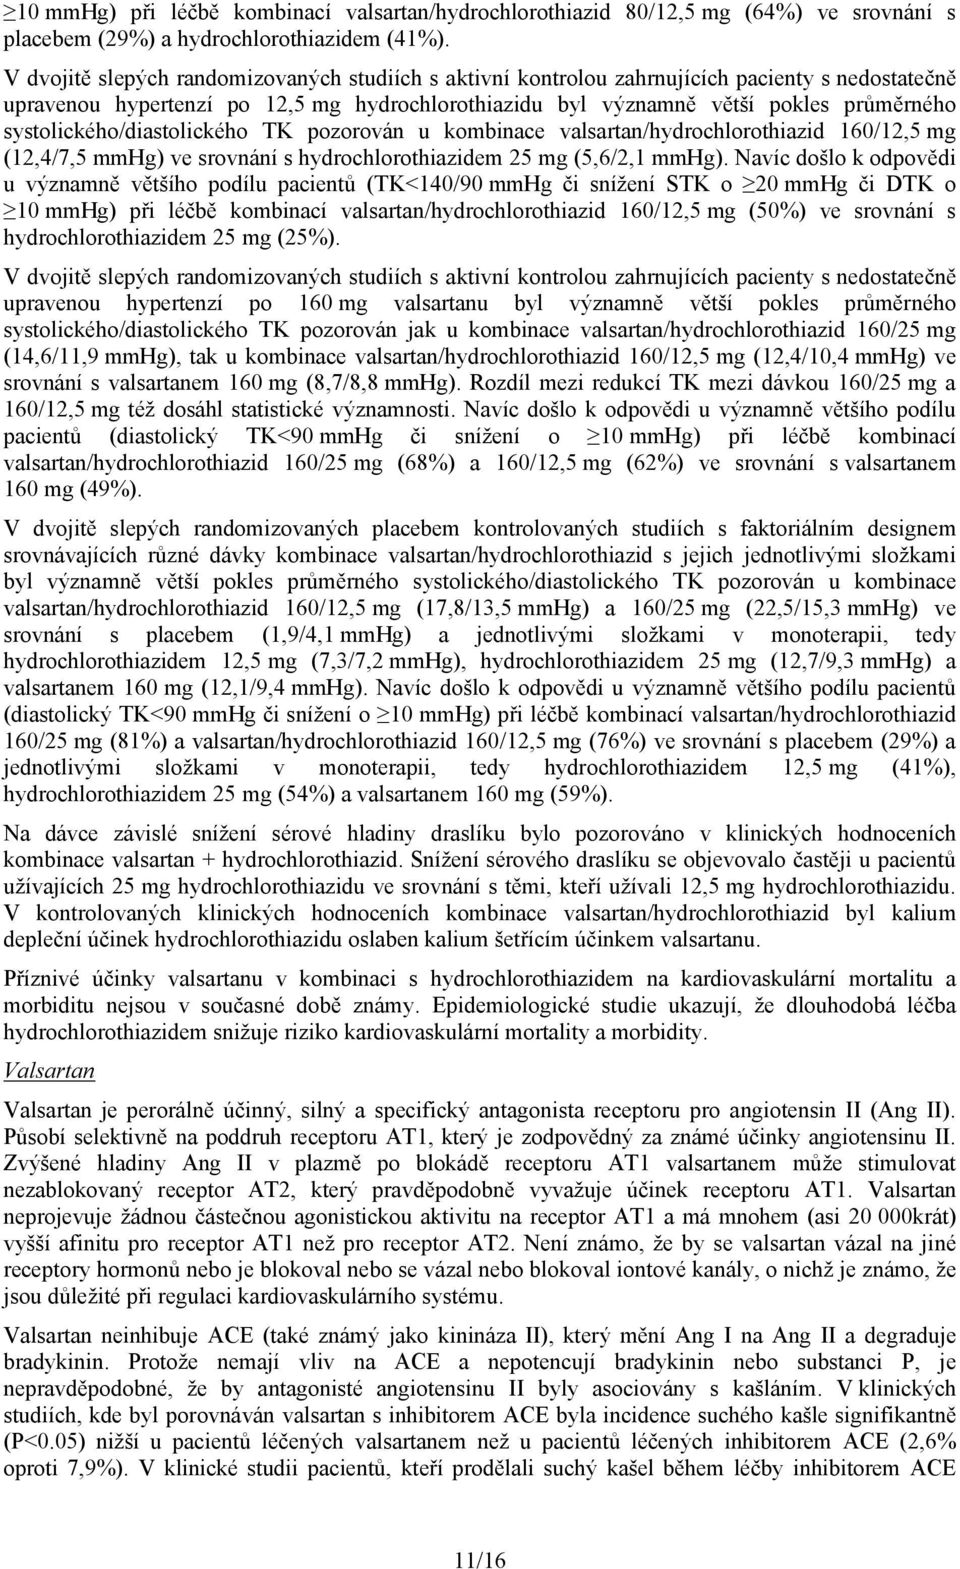 systolického/diastolického TK pozorován u kombinace valsartan/hydrochlorothiazid 160/12,5 mg (12,4/7,5 mmhg) ve srovnání s hydrochlorothiazidem 25 mg (5,6/2,1 mmhg).